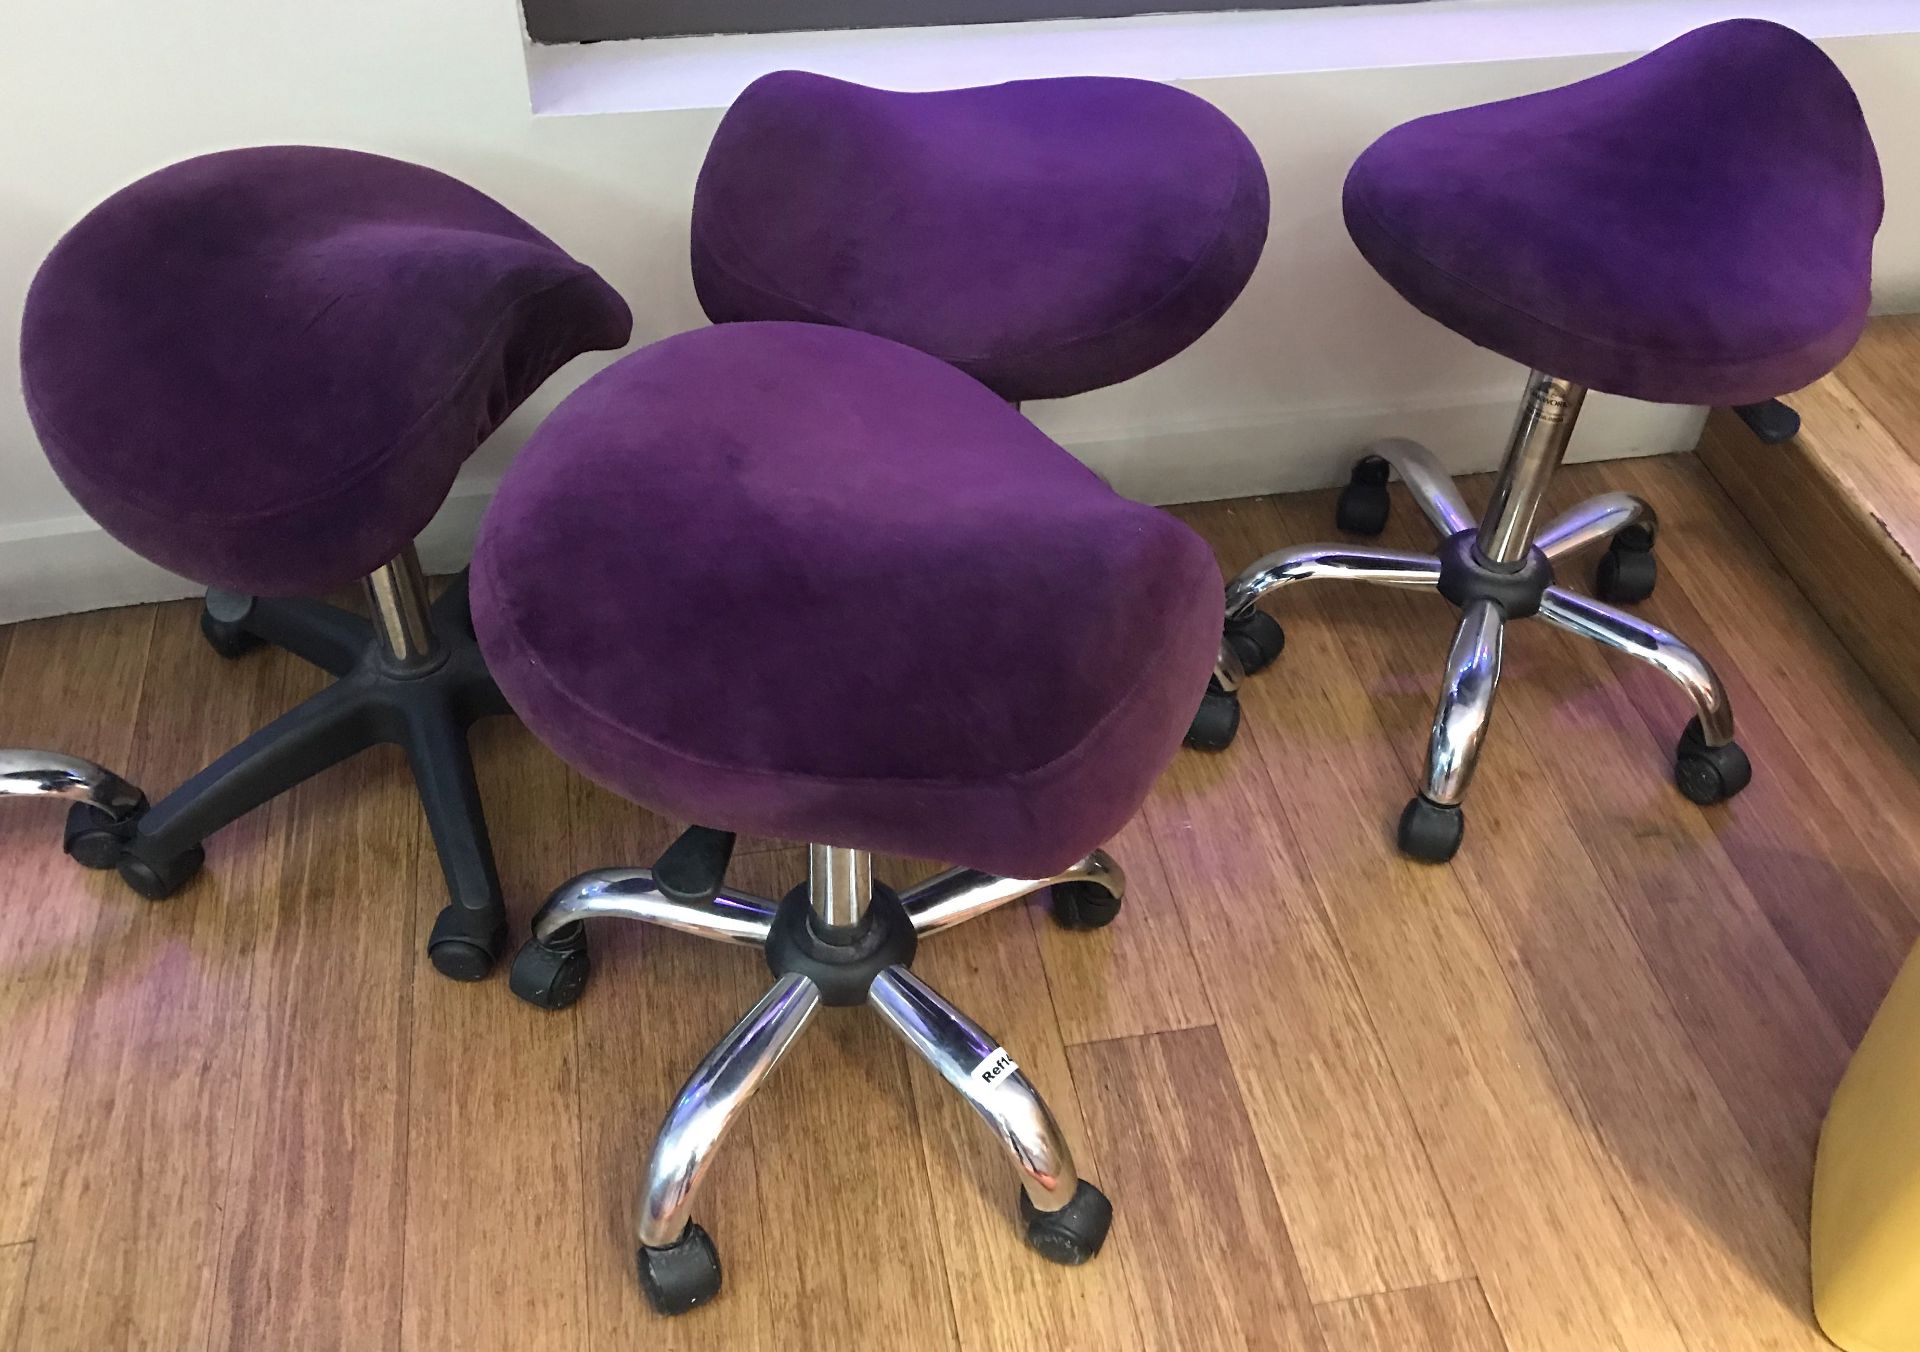 2 x Hydraulic Ergonomic Saddle Rolling Spa Massage Stools - Purple Velvet Upholstery and Chrome